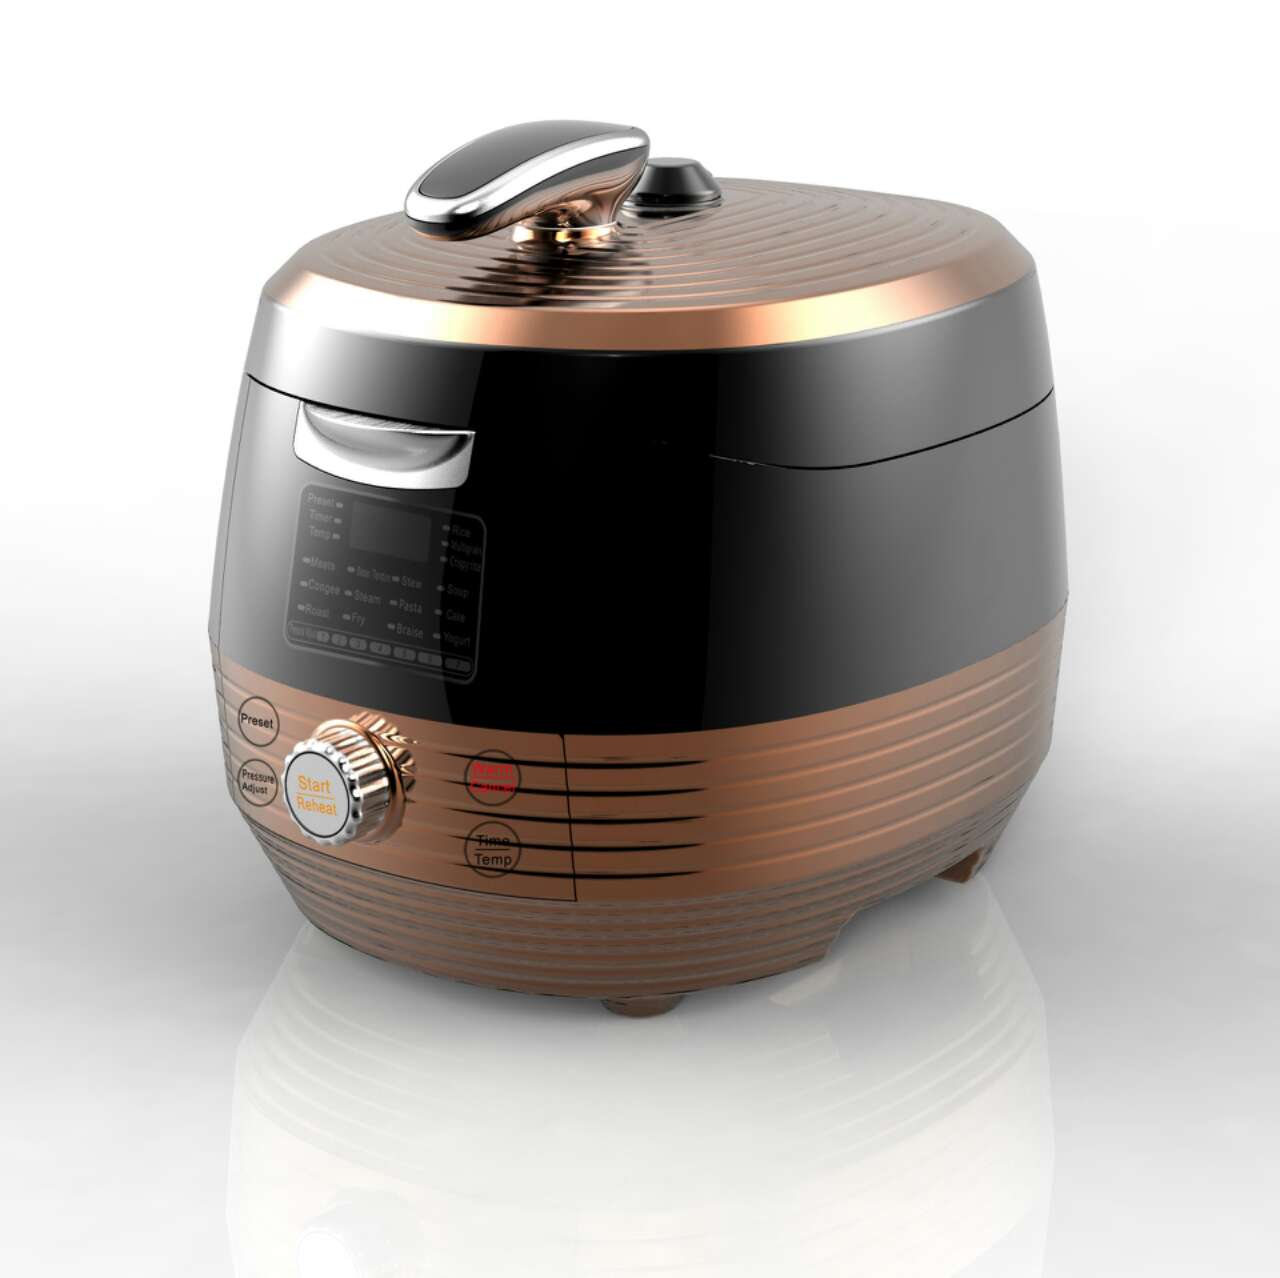 Stainless steel inner pot pressure cooker